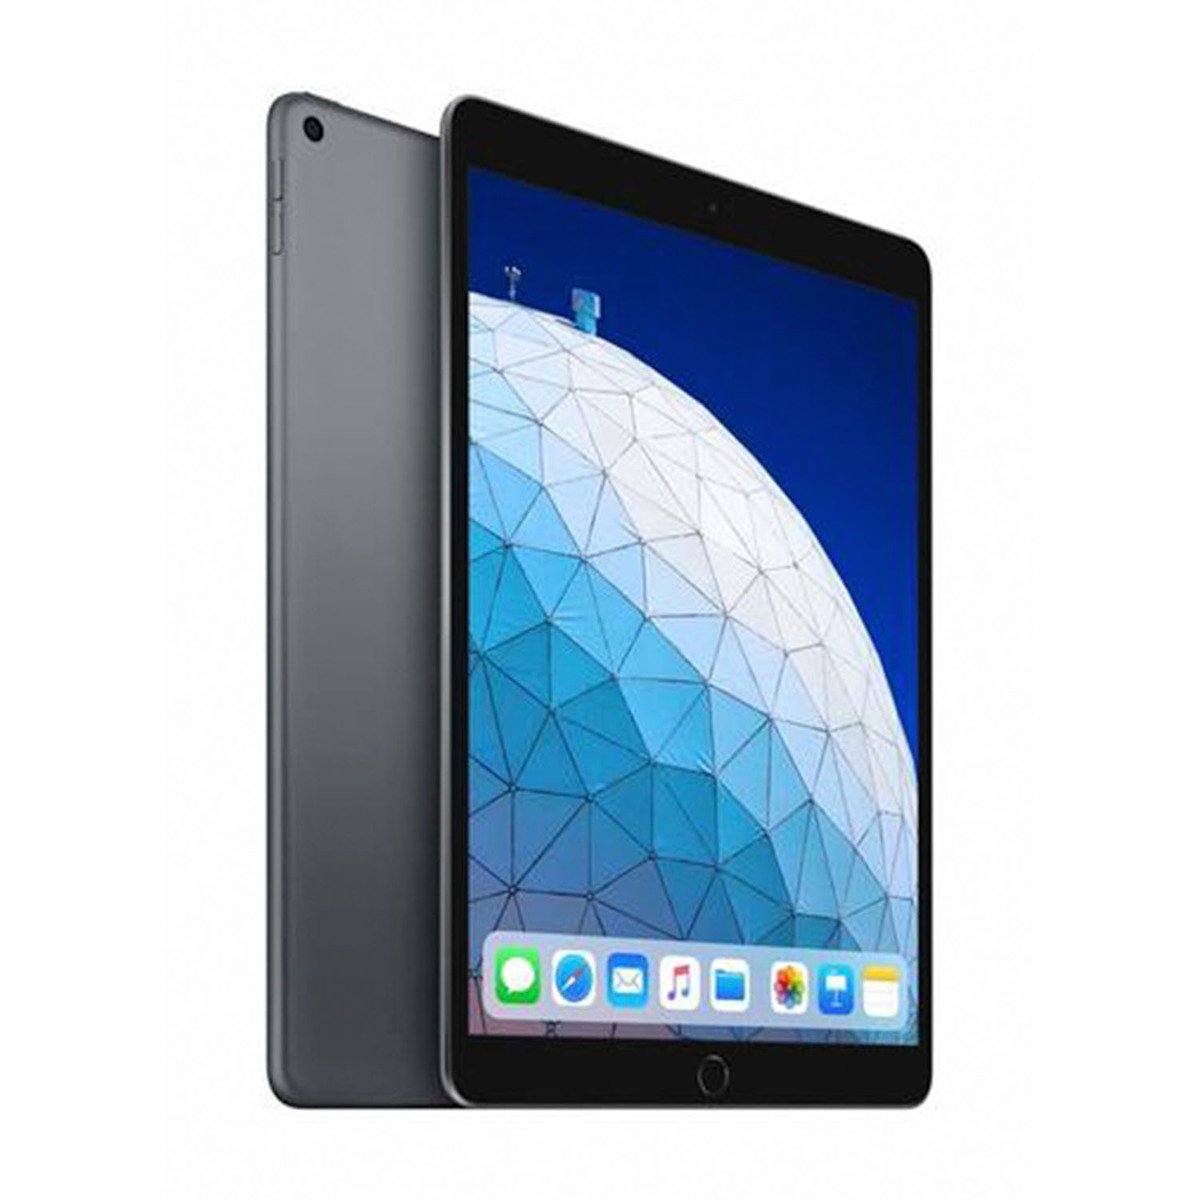 Apple iPad Air (2019) - iOS (Wi-Fi, 64GB) 10.5inch Space Grey